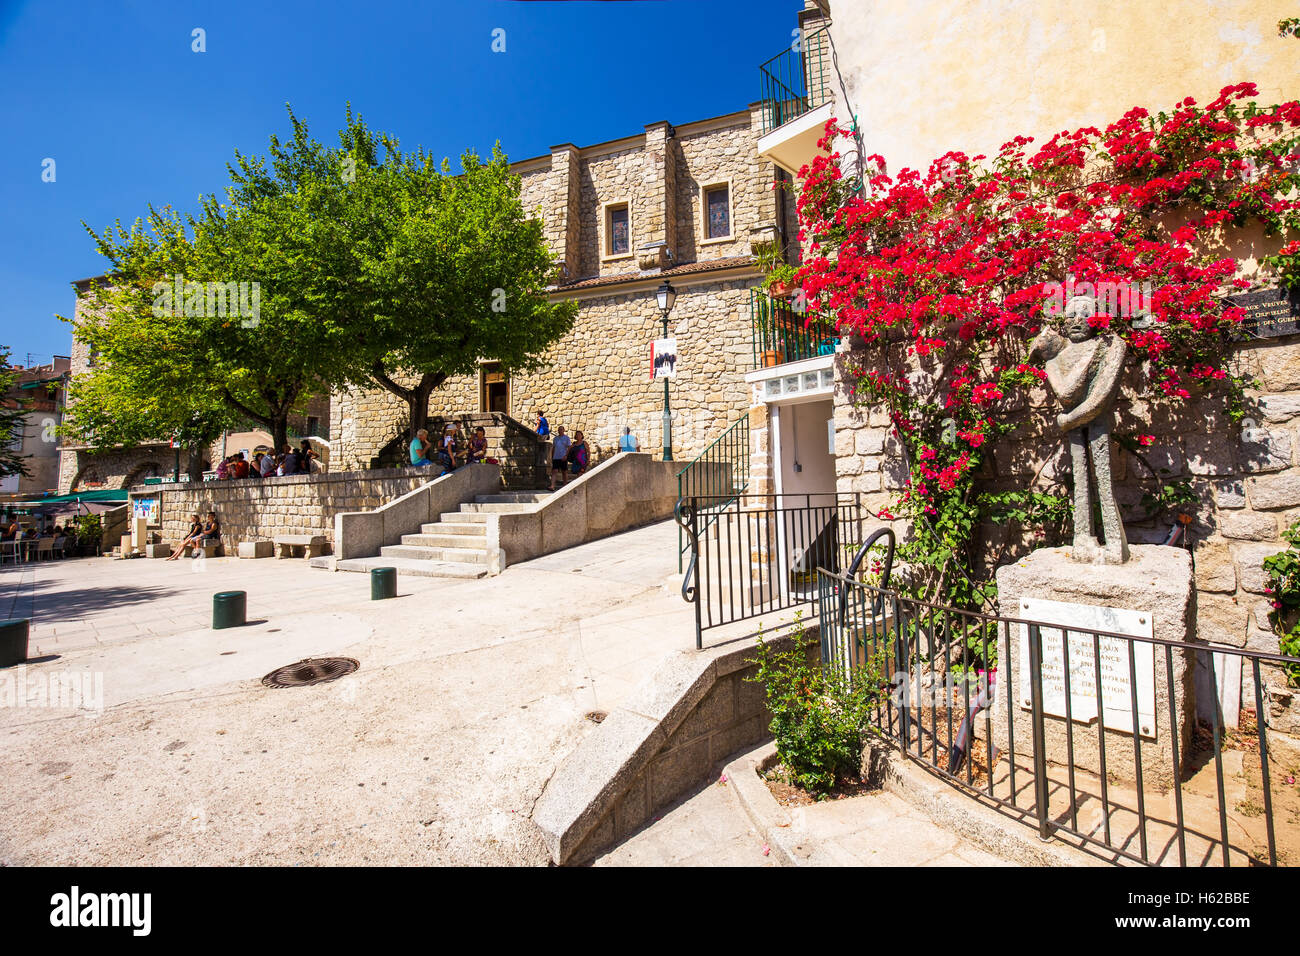 SARTENE, CORSE - 29 août 2016 - Centre de la vieille ville de Sartène ville avec l'église Santa Maria, Corse, France, Europe. Banque D'Images